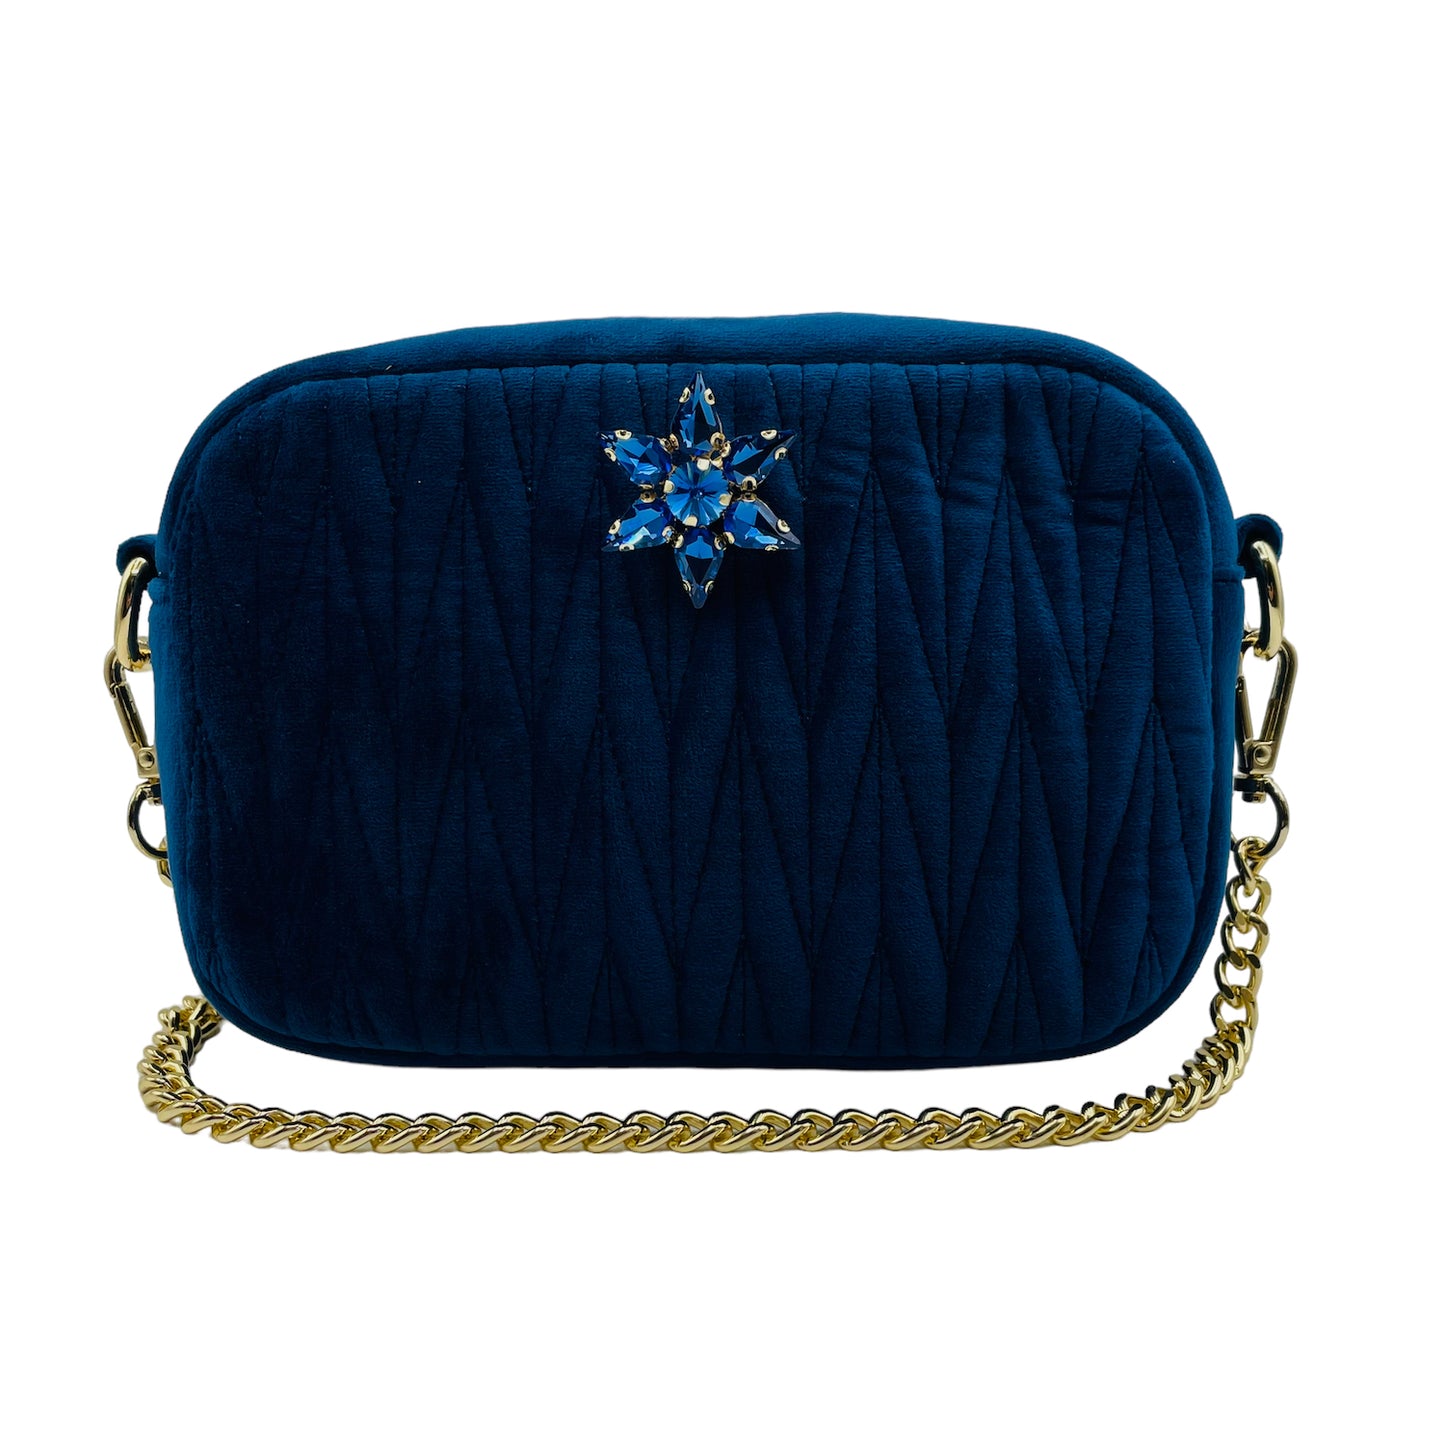 Velvet Rivington handbag in blue, recycled velvet